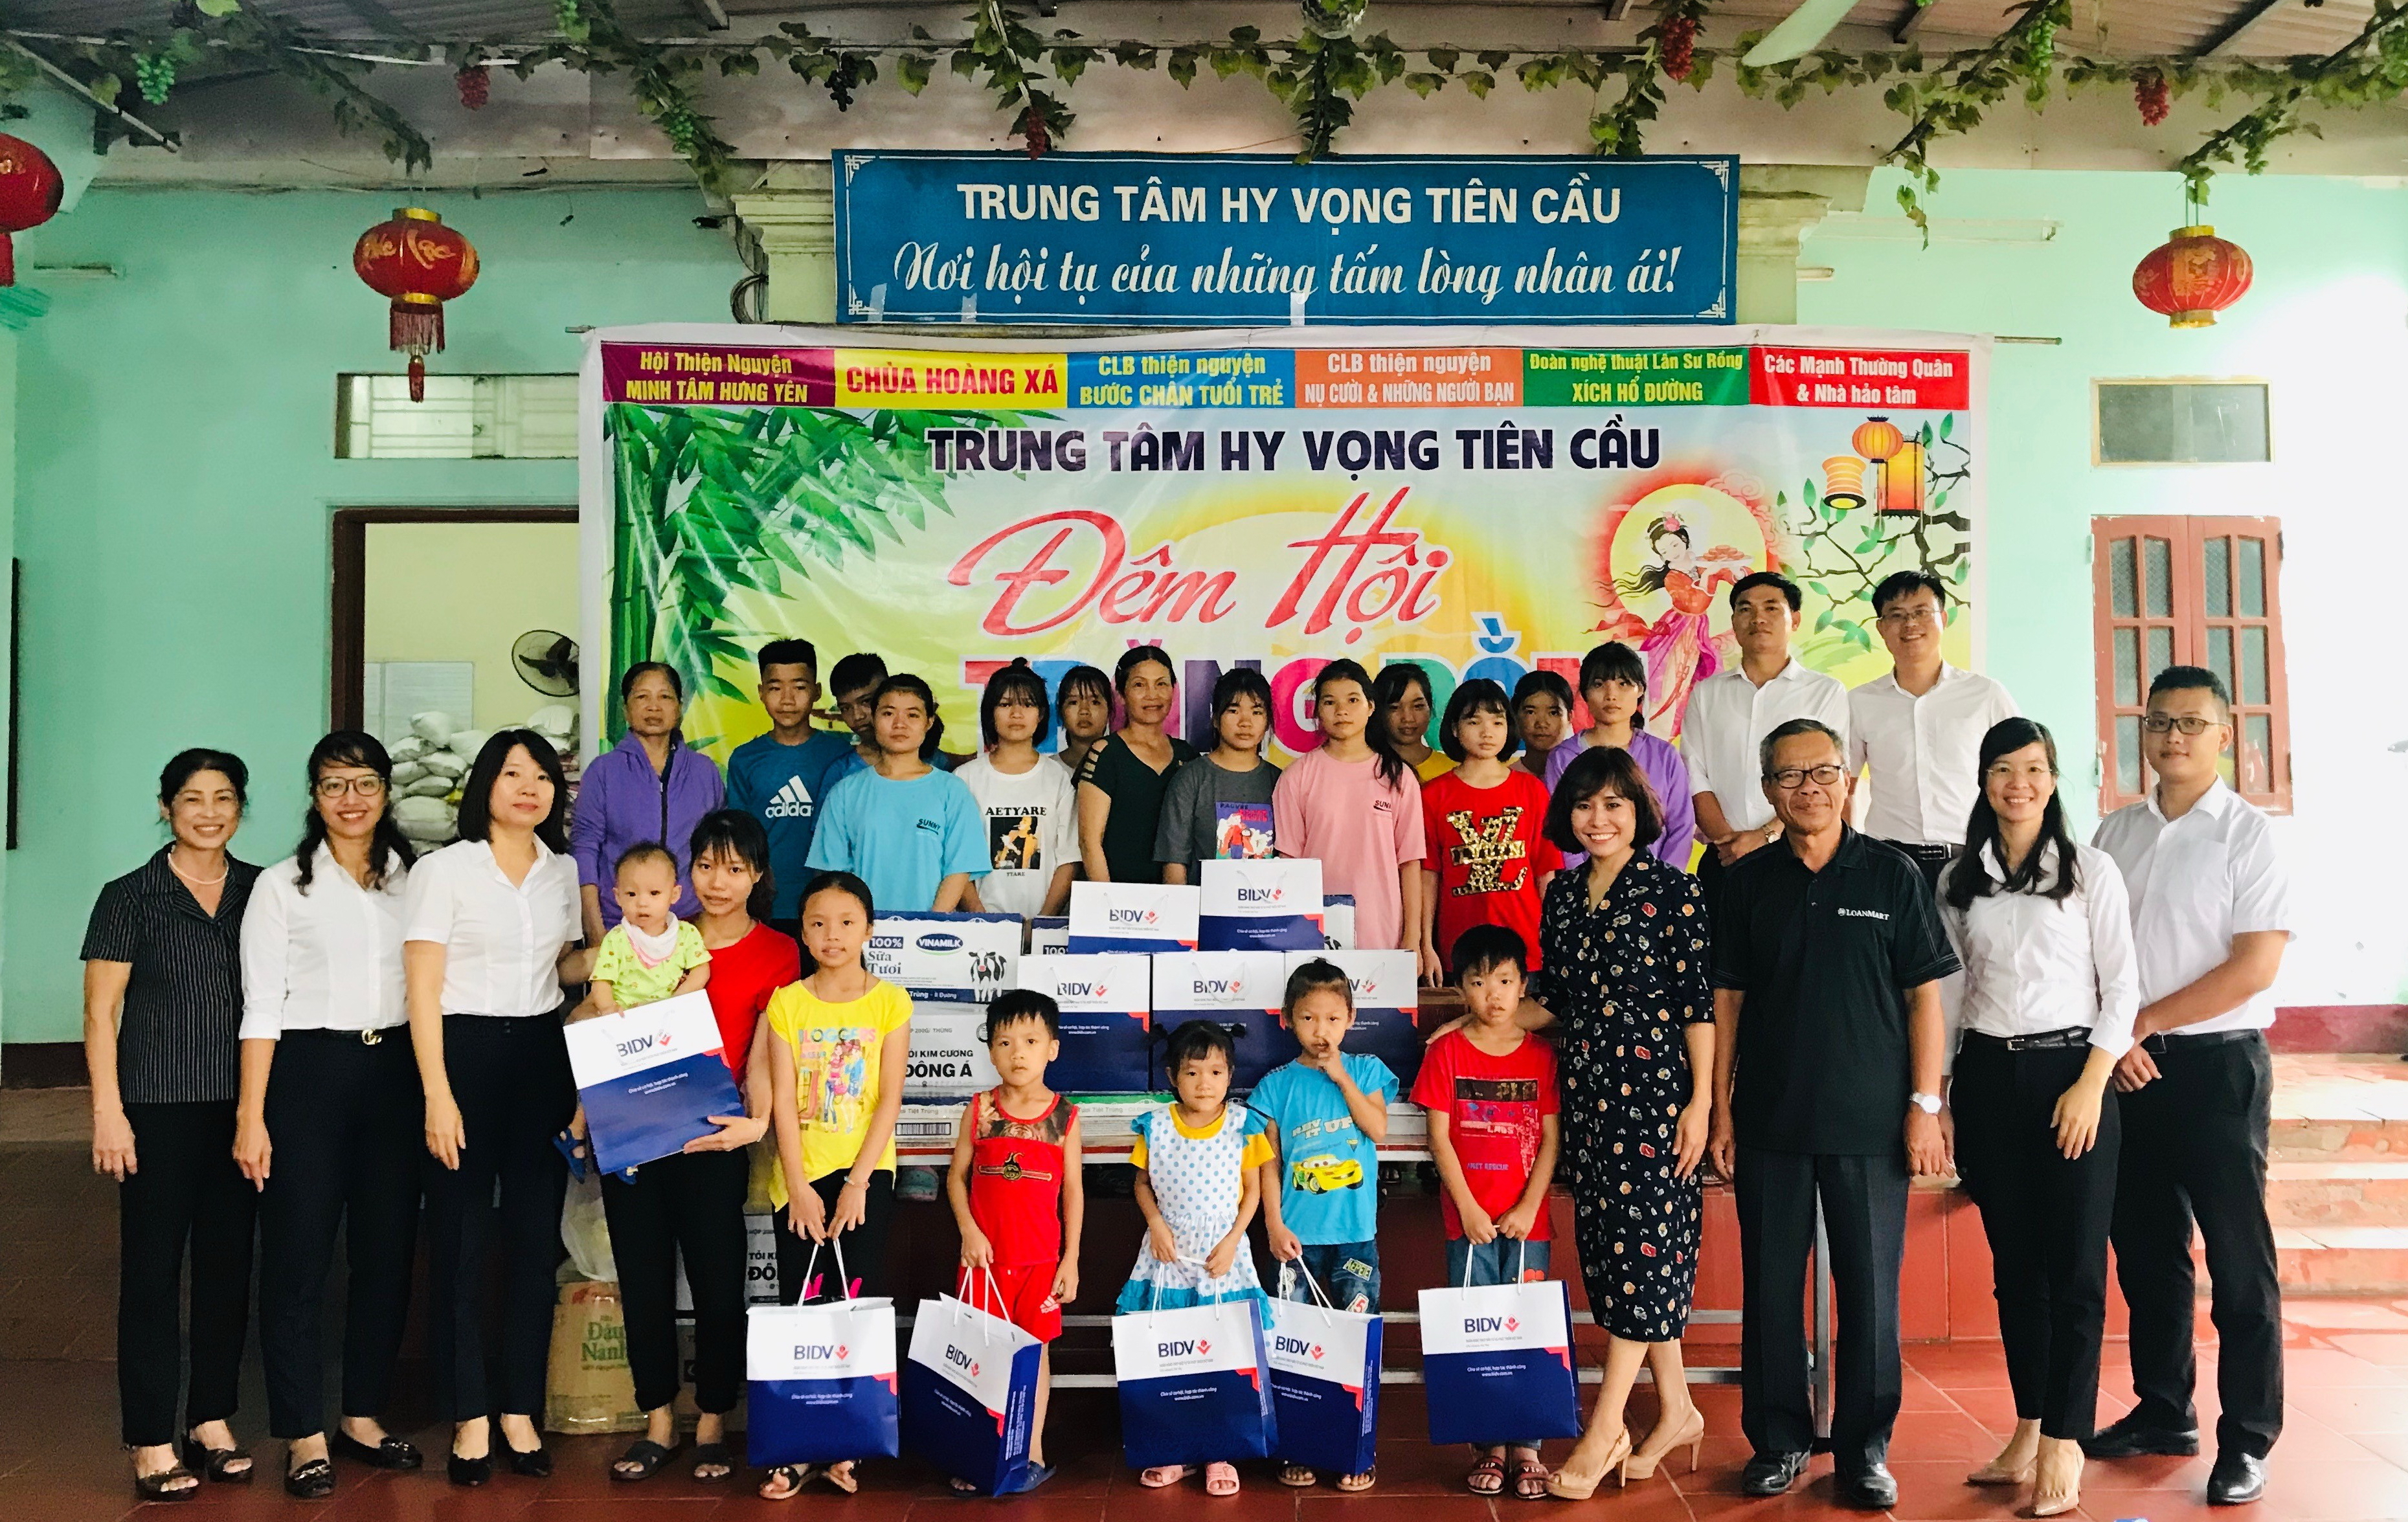 BIDV nhận giải thưởng “Thẻ tín dụng tốt nhất Việt Nam” 3 năm liên tiếp